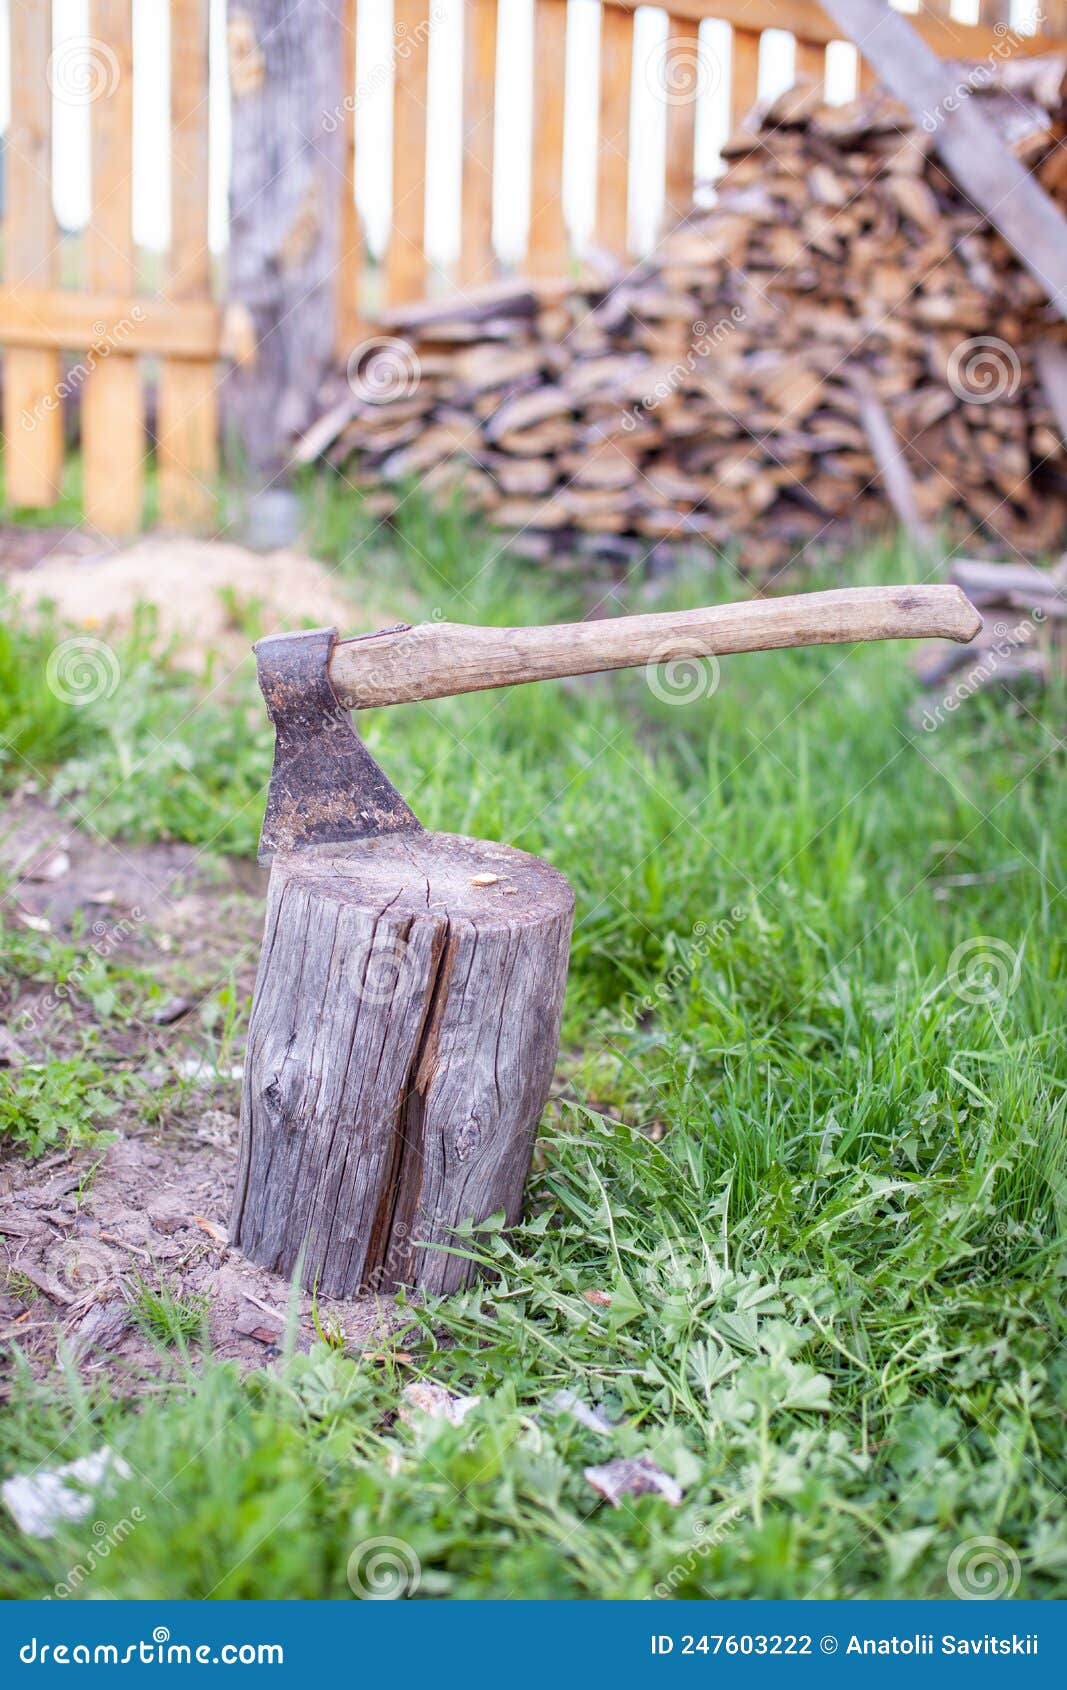 La vida del pueblo un hacha en un tocón o tronco para cortar leña hacha  oxidada pero muy afilada